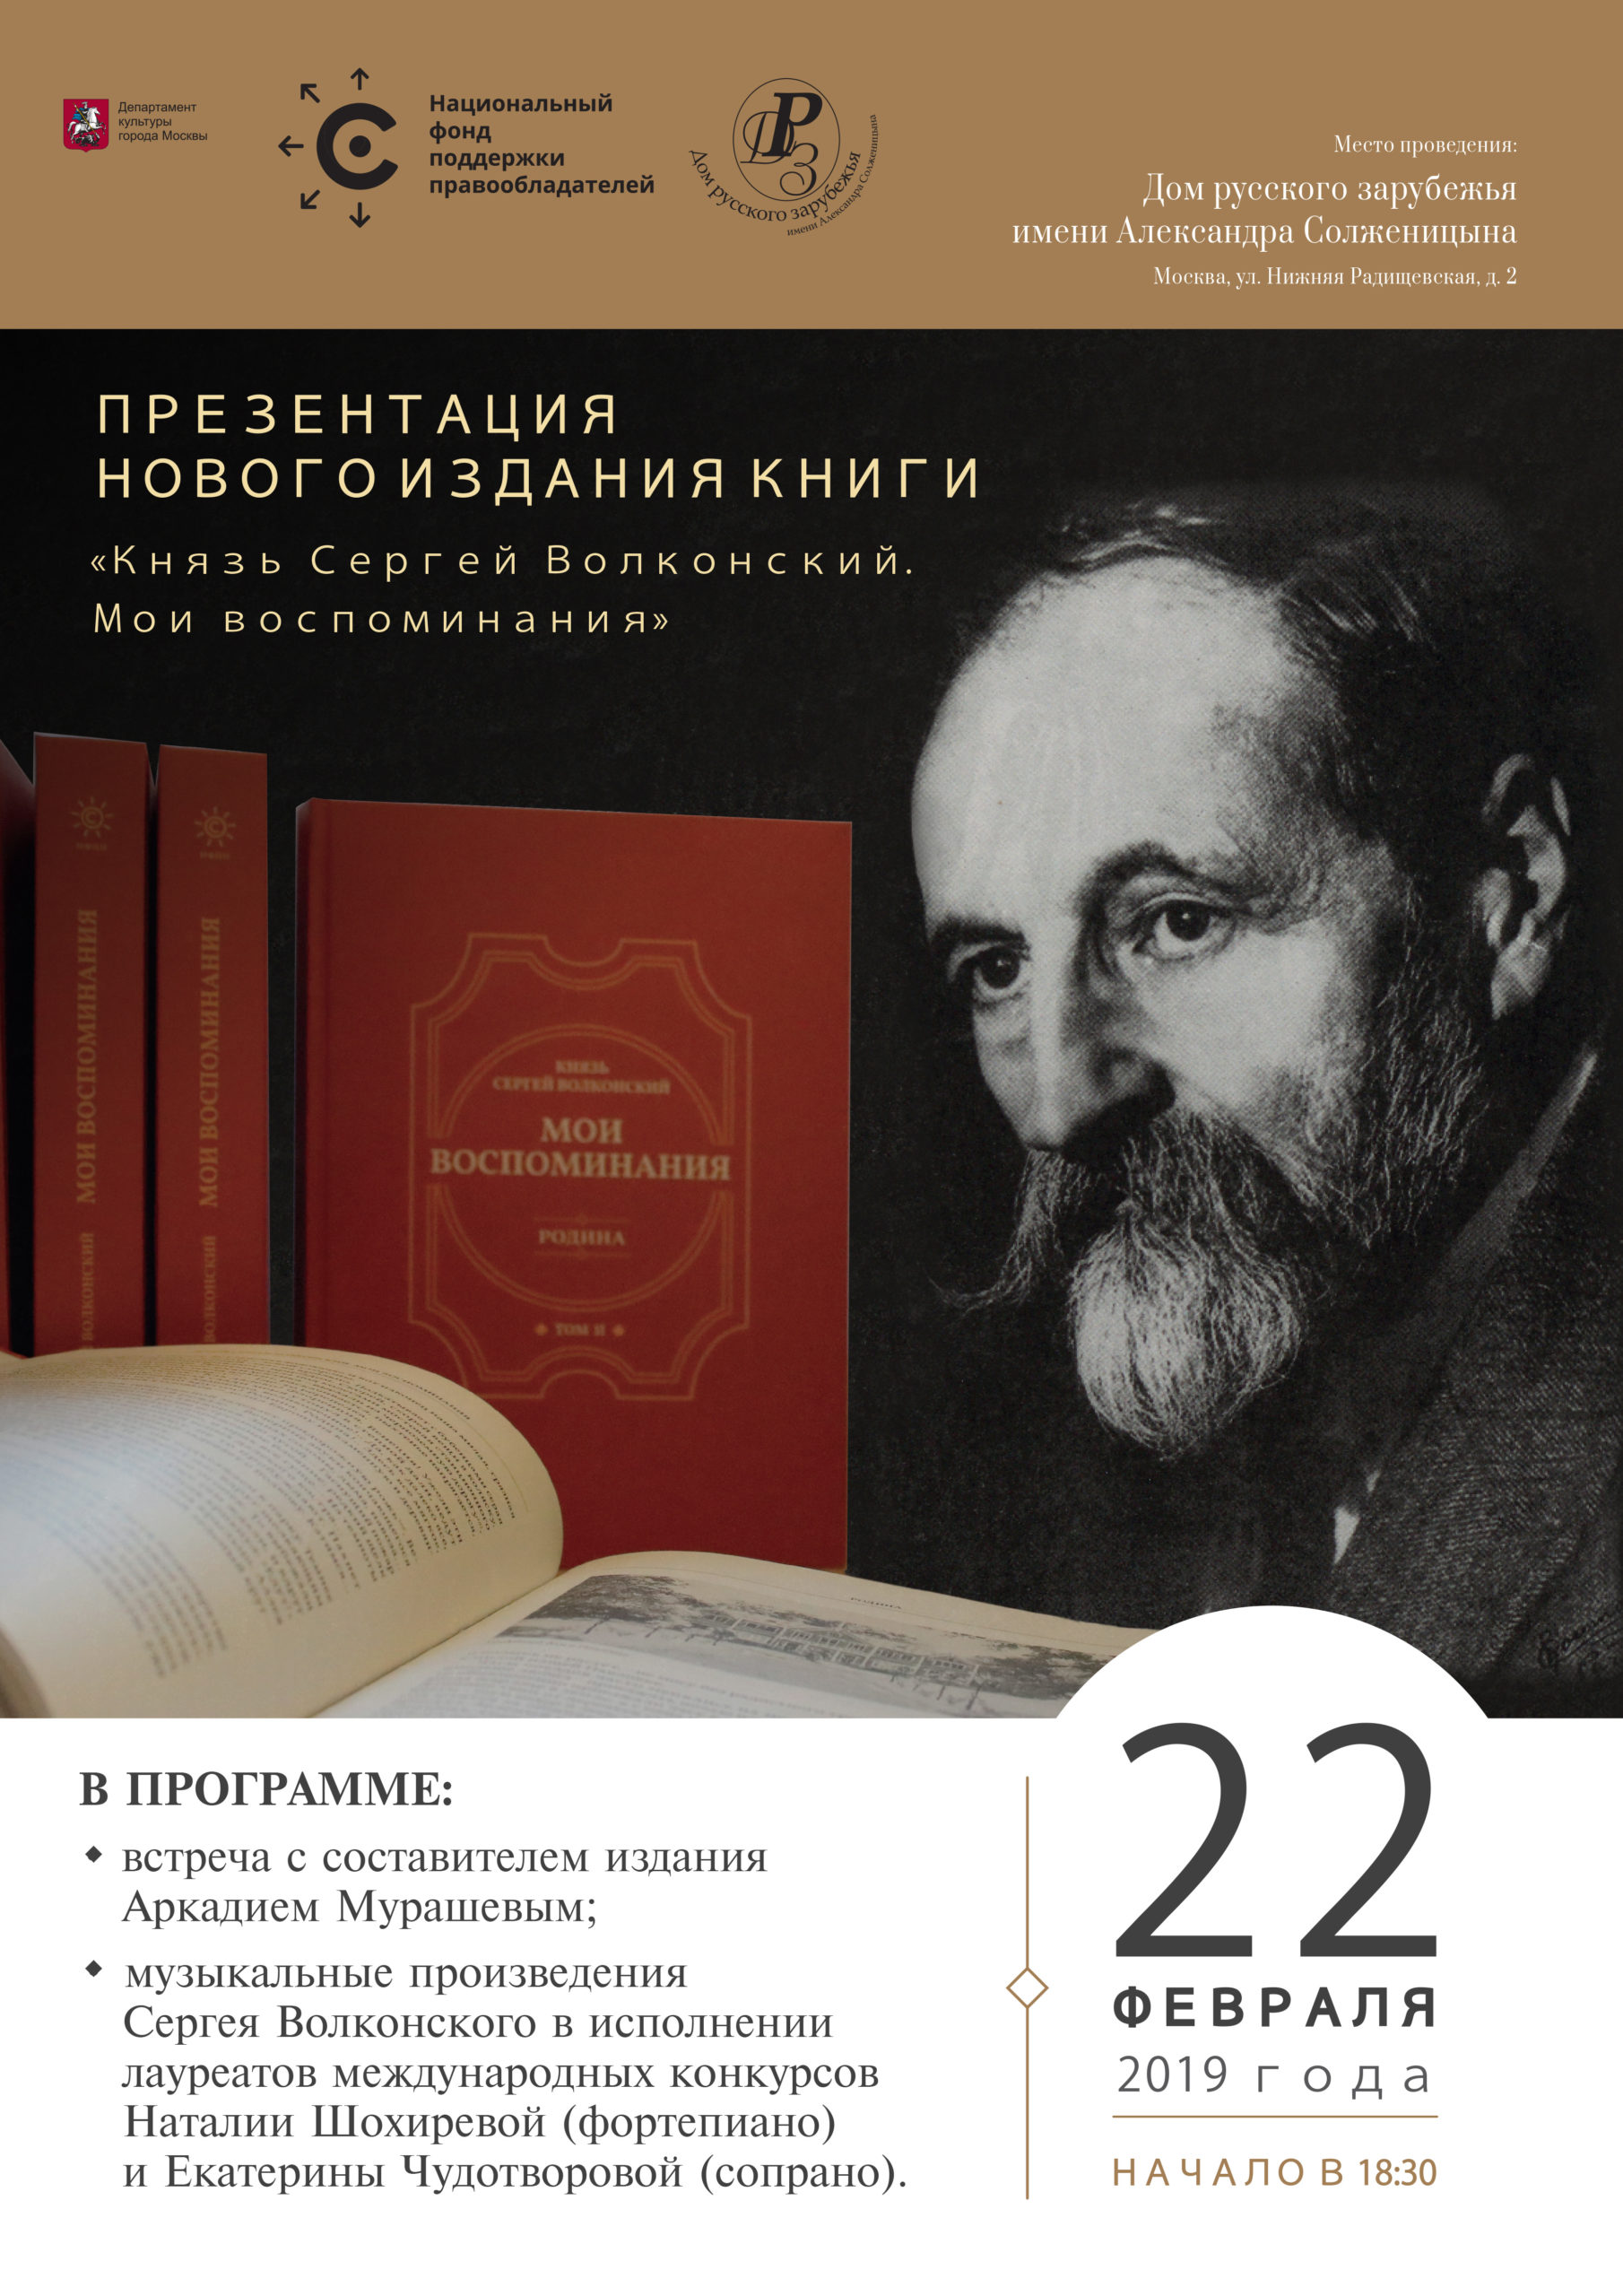 НФПП представит новое издание двухтомной трилогии князя Сергея Волконского «Мои воспоминания»